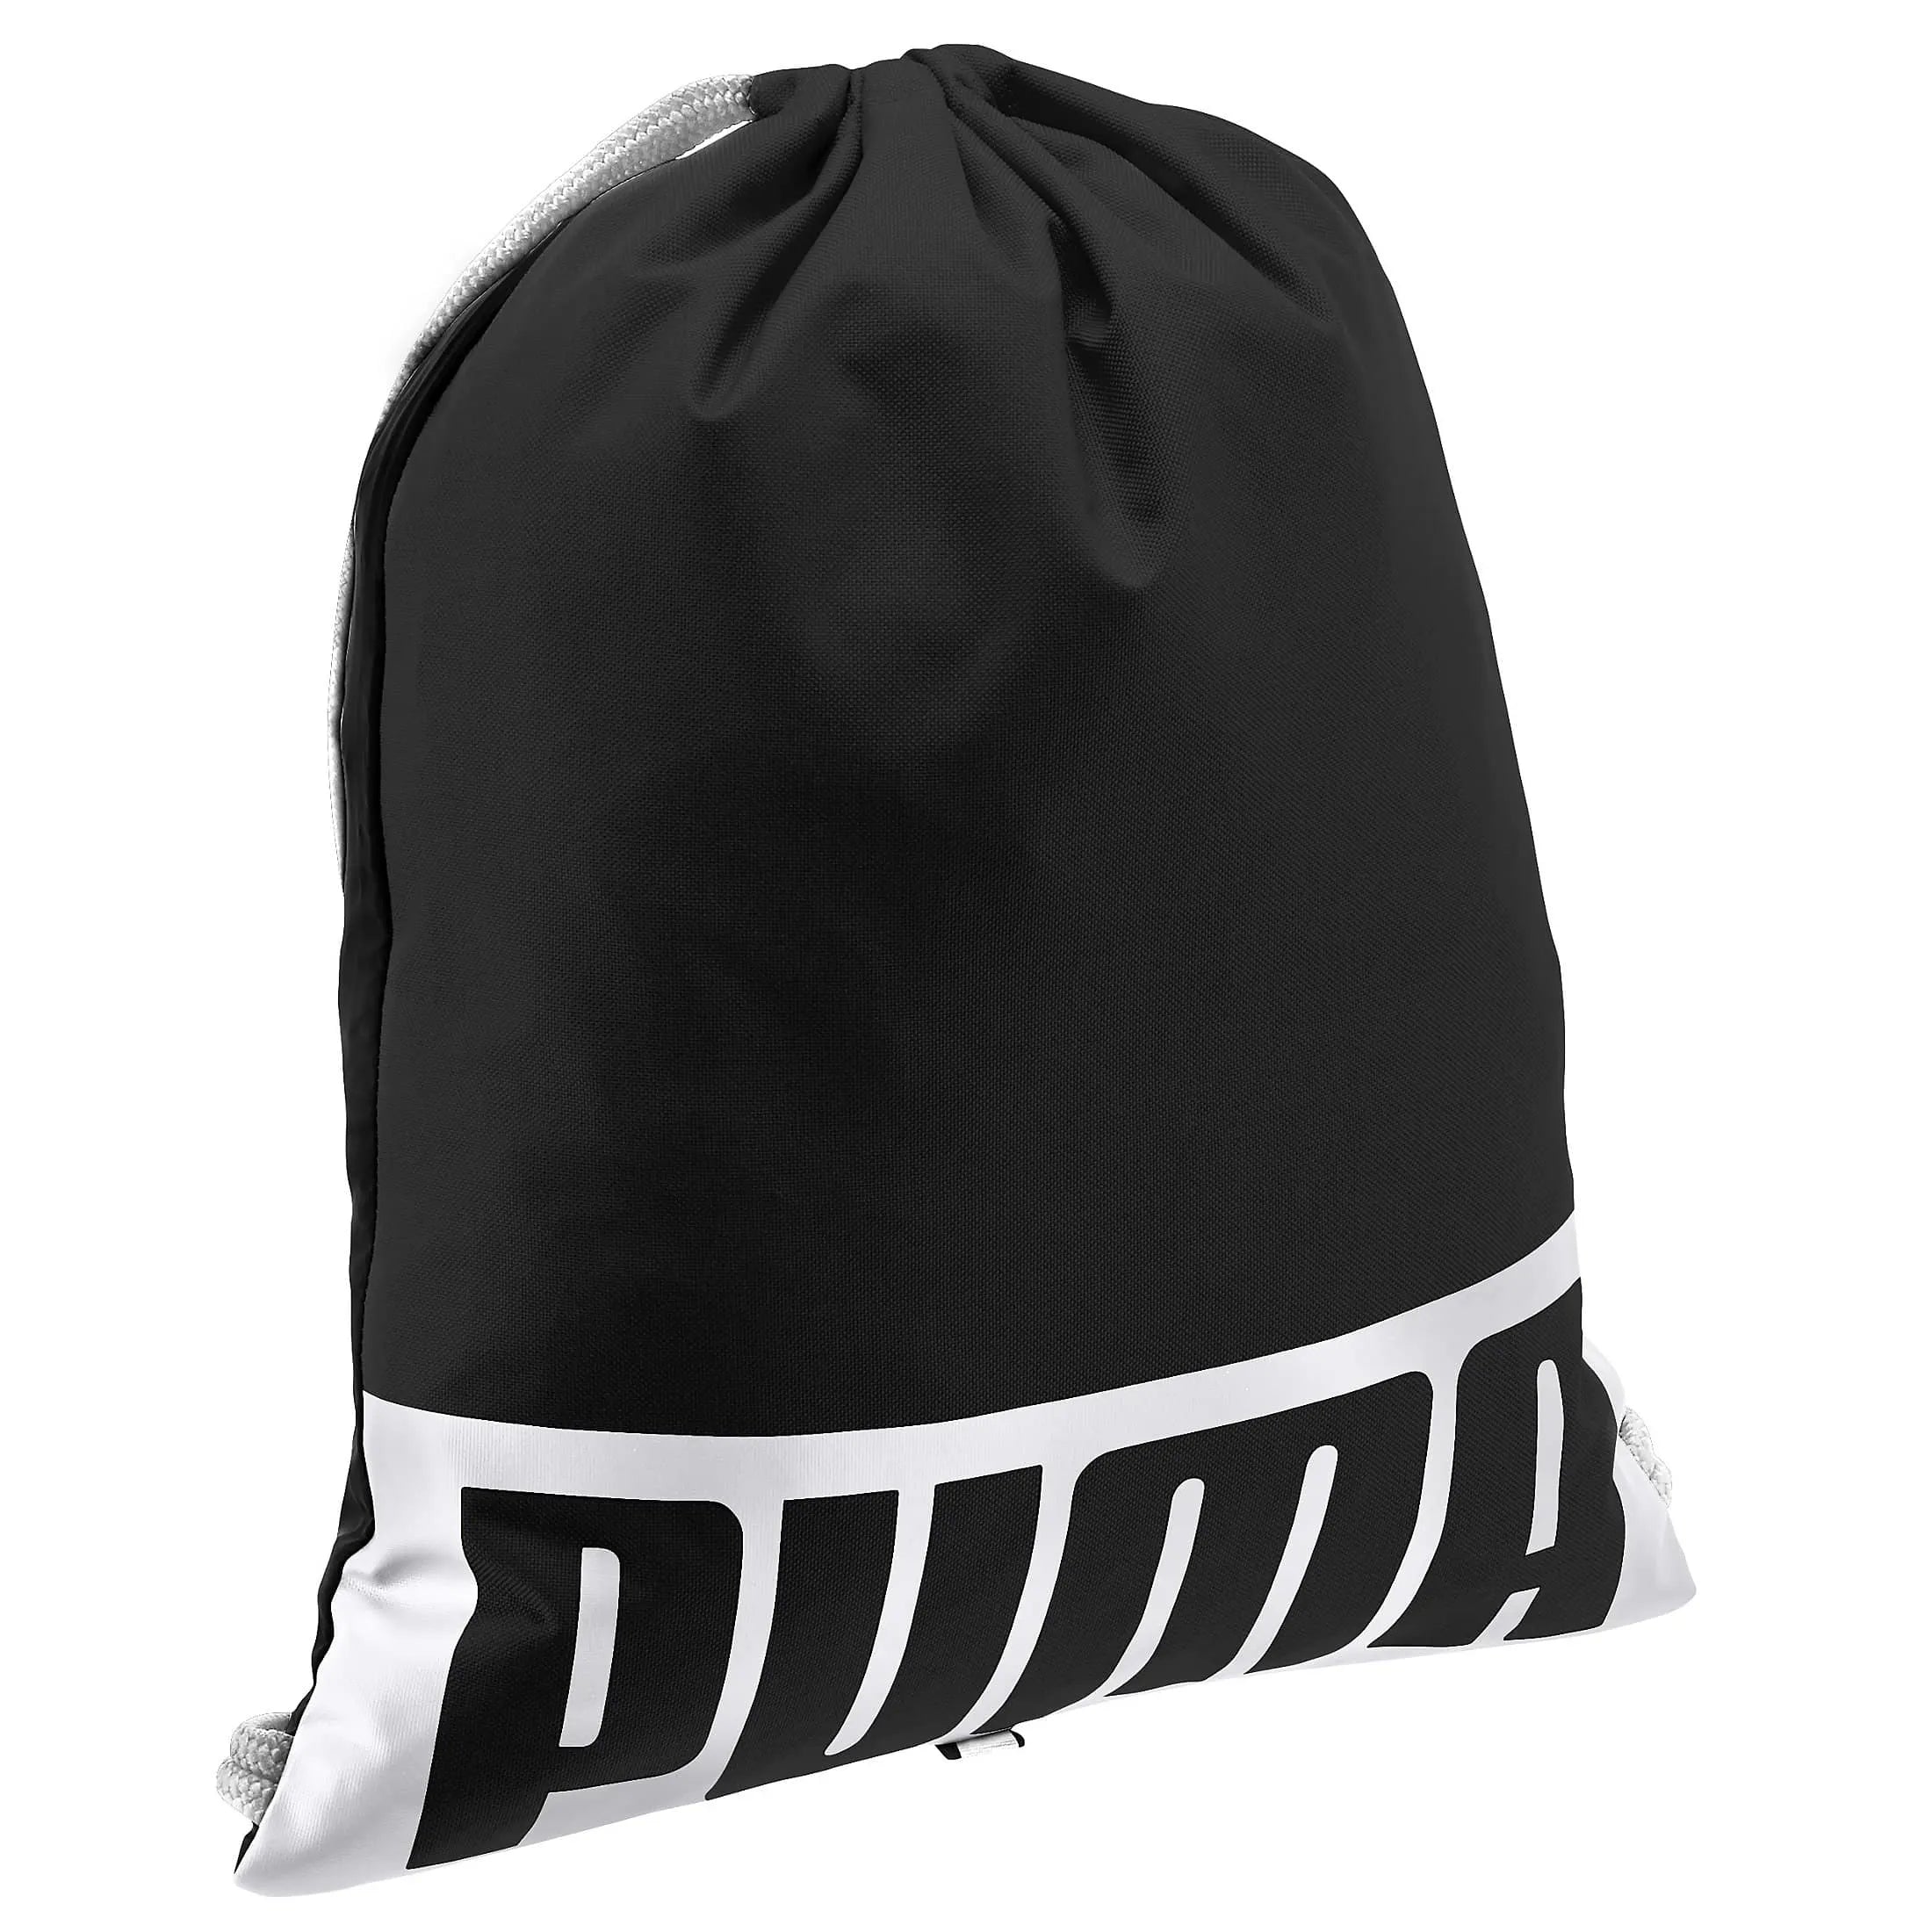 Puma Deck sac de sport 42 cm - noir